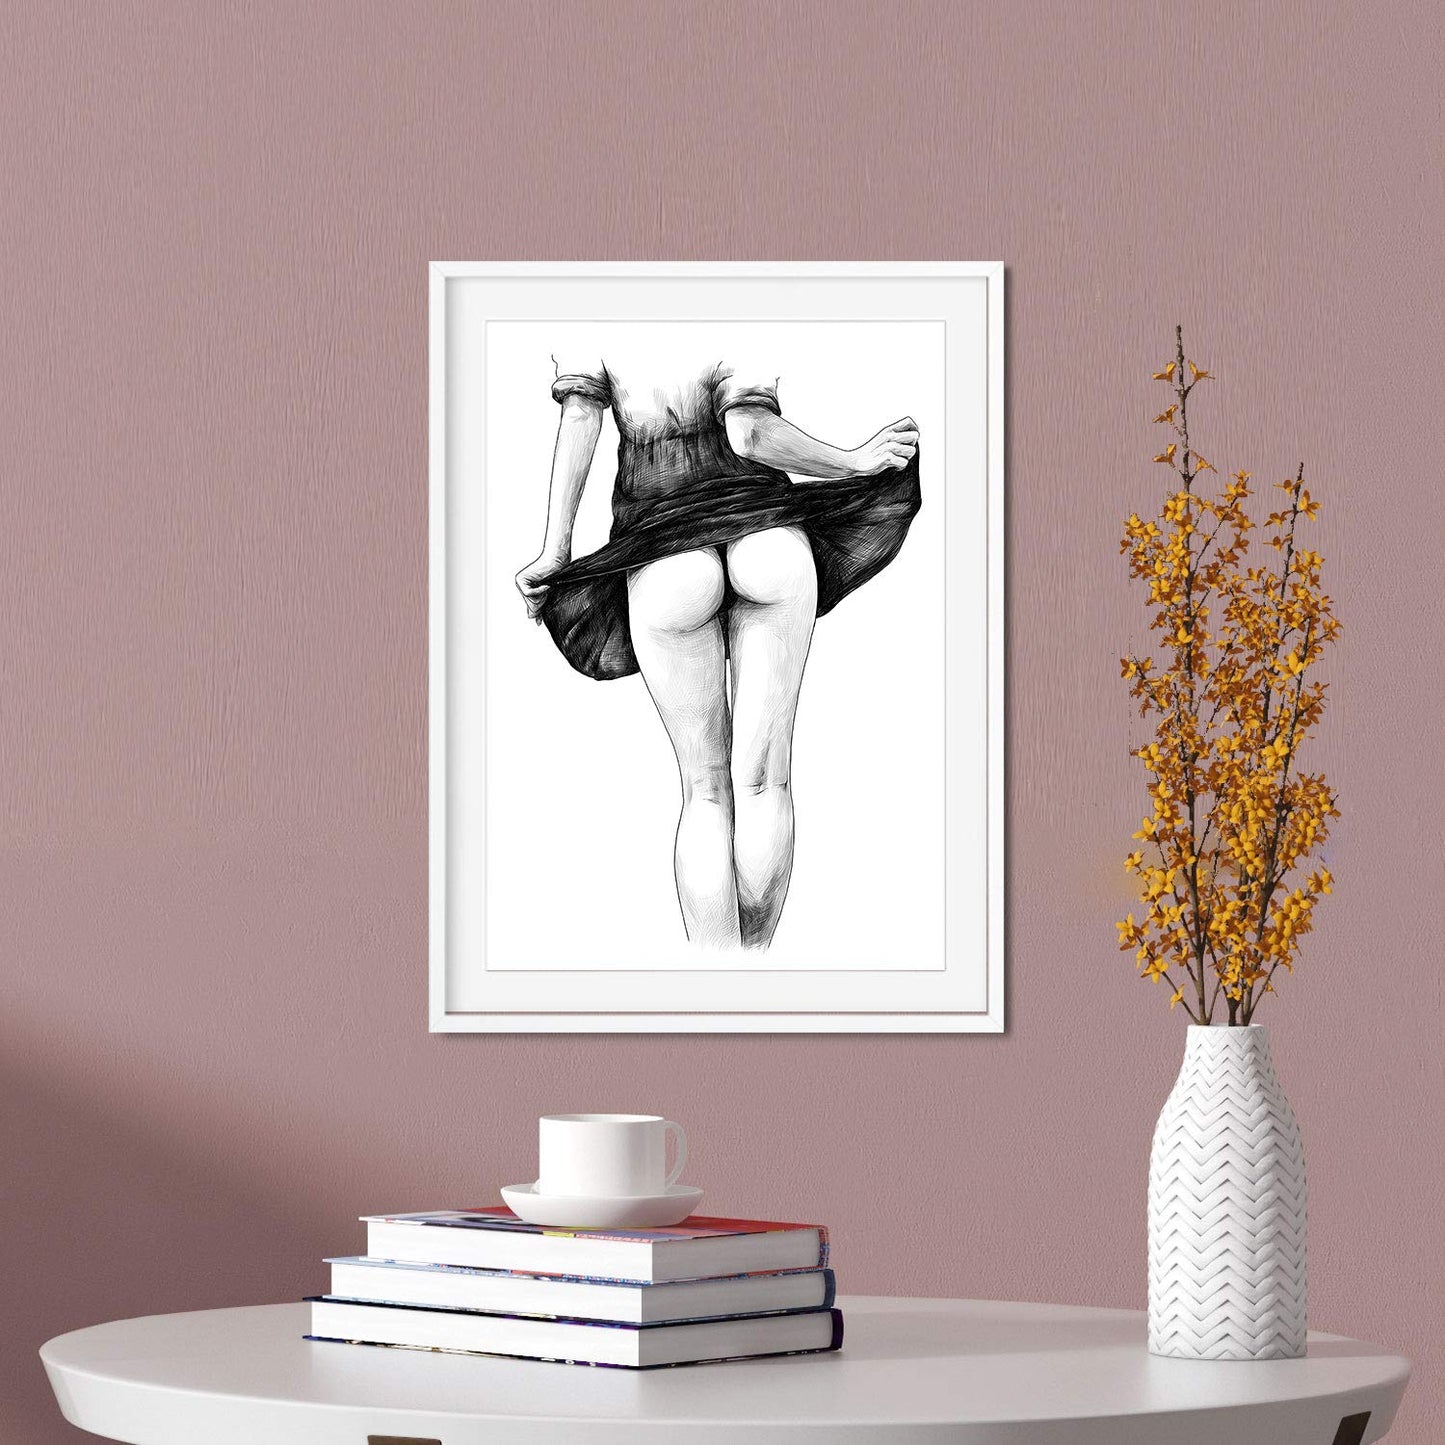 Set de posters eróticos. Láminas Chica mujer dibujadas con imágenes sensuales del cuerpo femenino.-Artwork-Nacnic-Nacnic Estudio SL